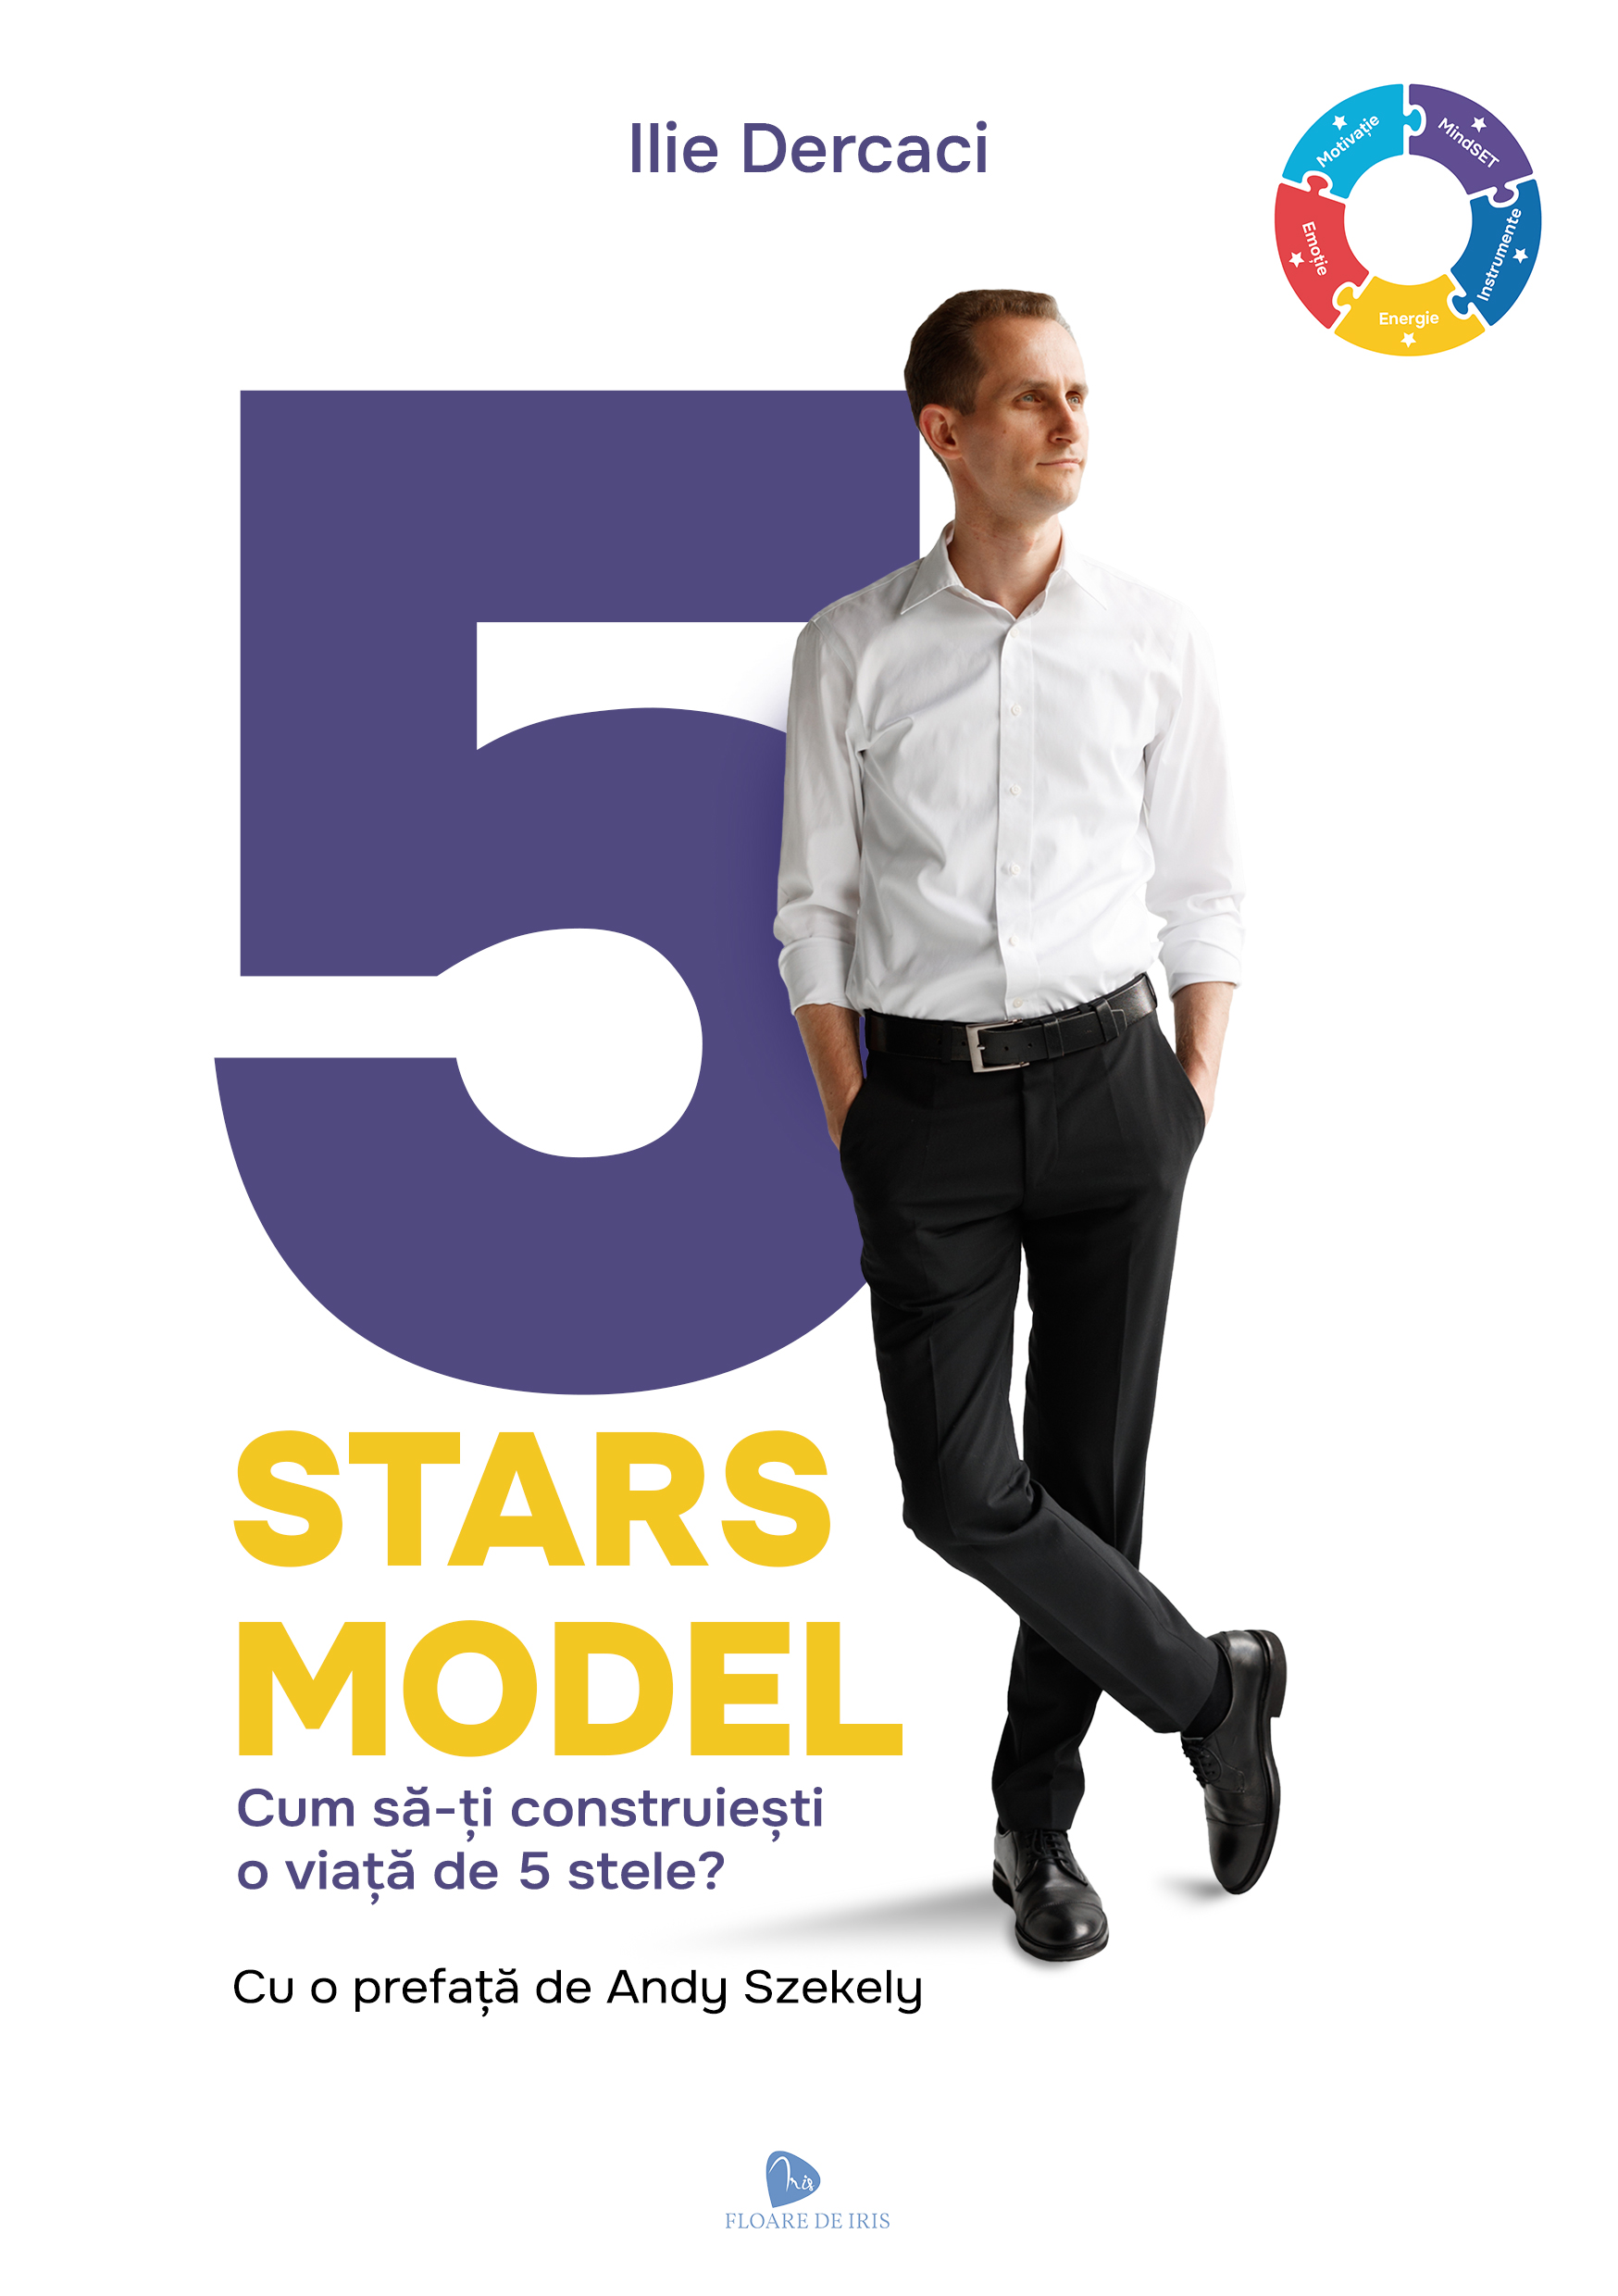 5 Stars Model – Cum să-ți construiești o viață de 5 stele?